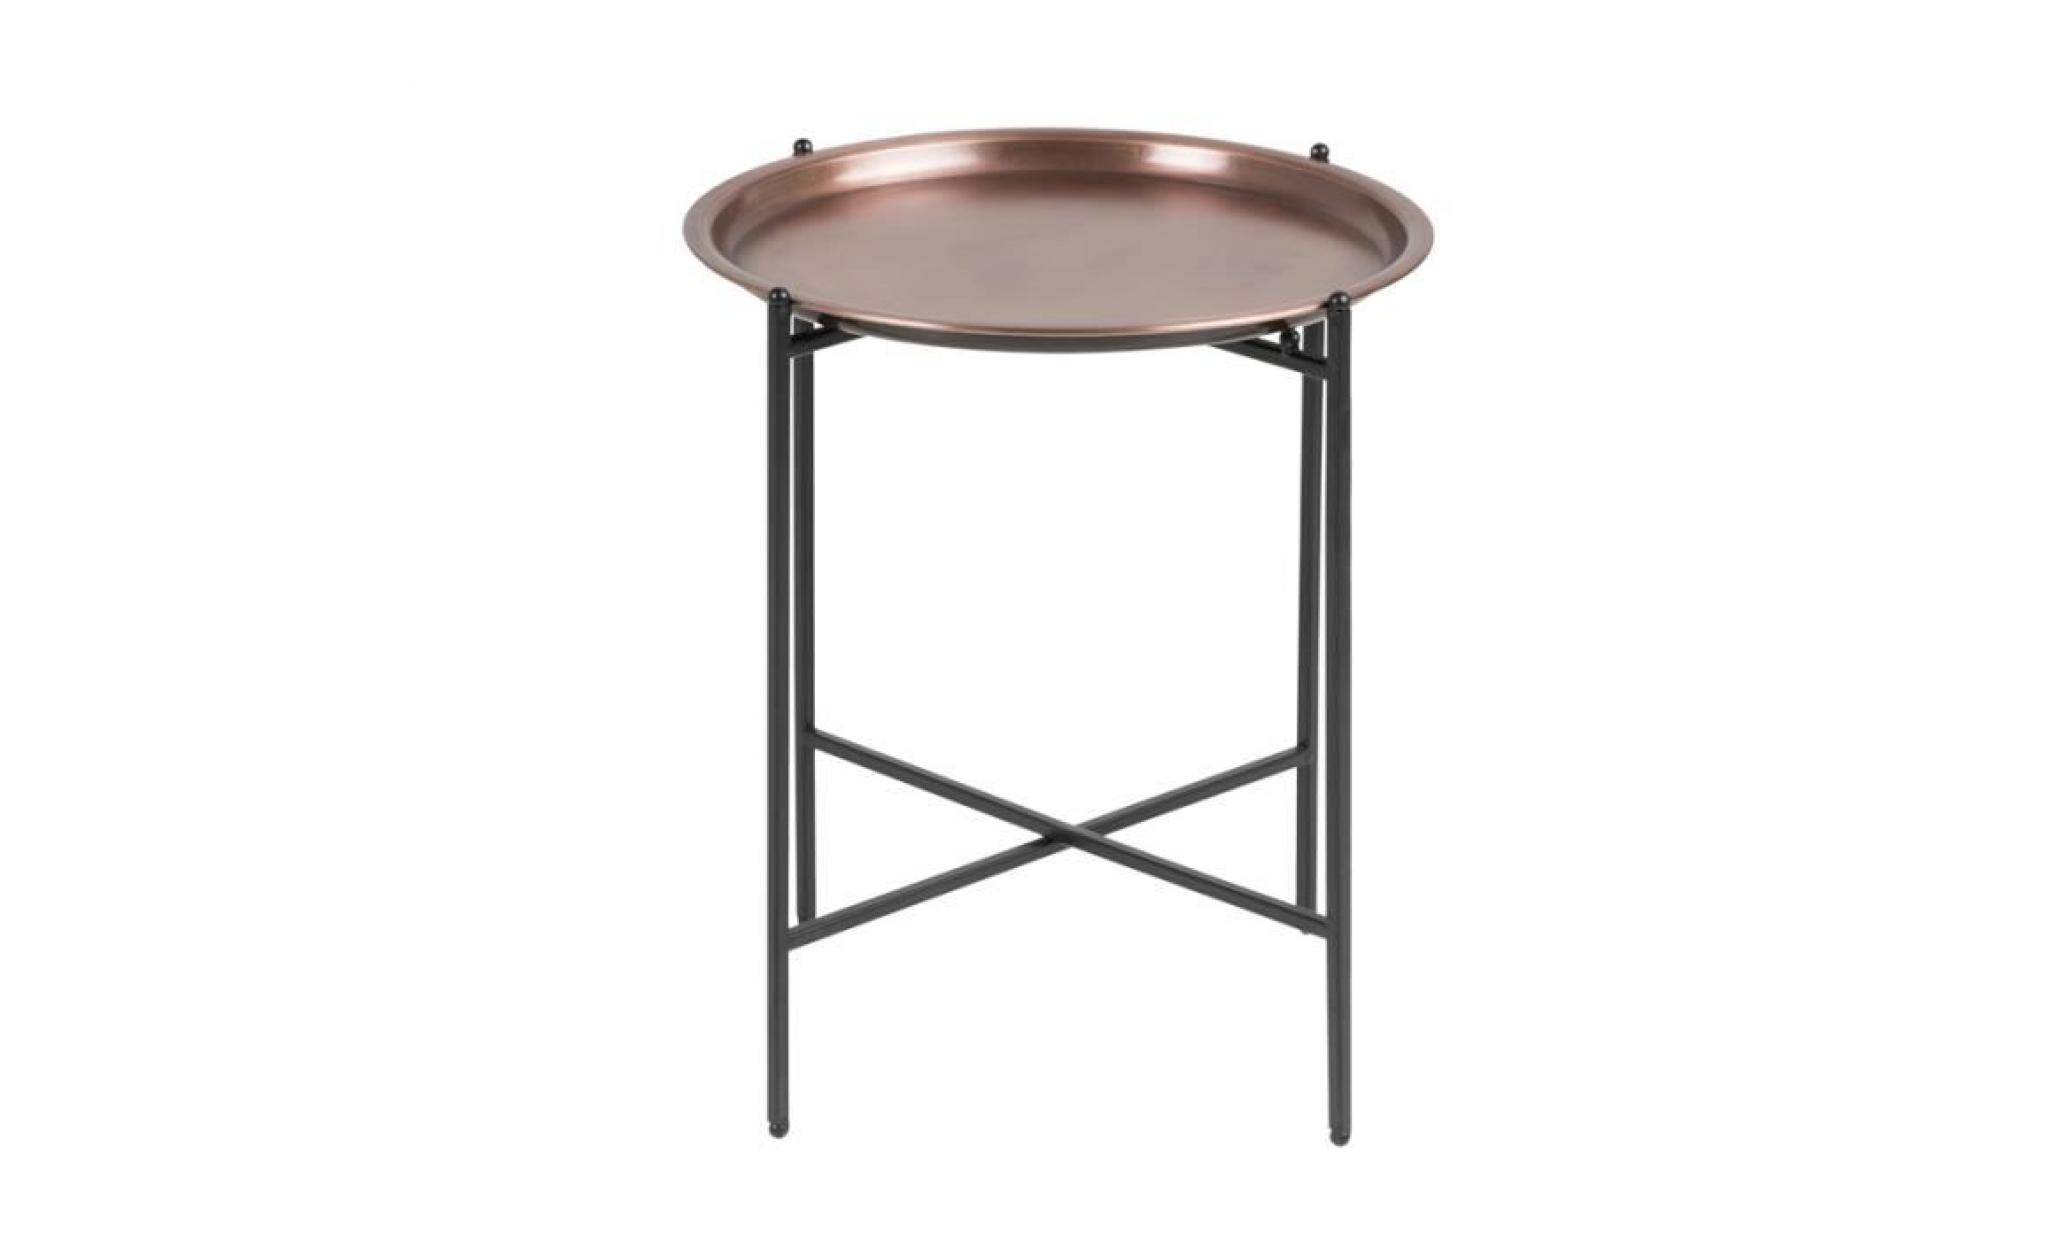 table de chevet glamour / table basse   millie   ⌀ 39,5 cm   noir / laiton   pieds en acier   style glamour   forme minimaliste pas cher